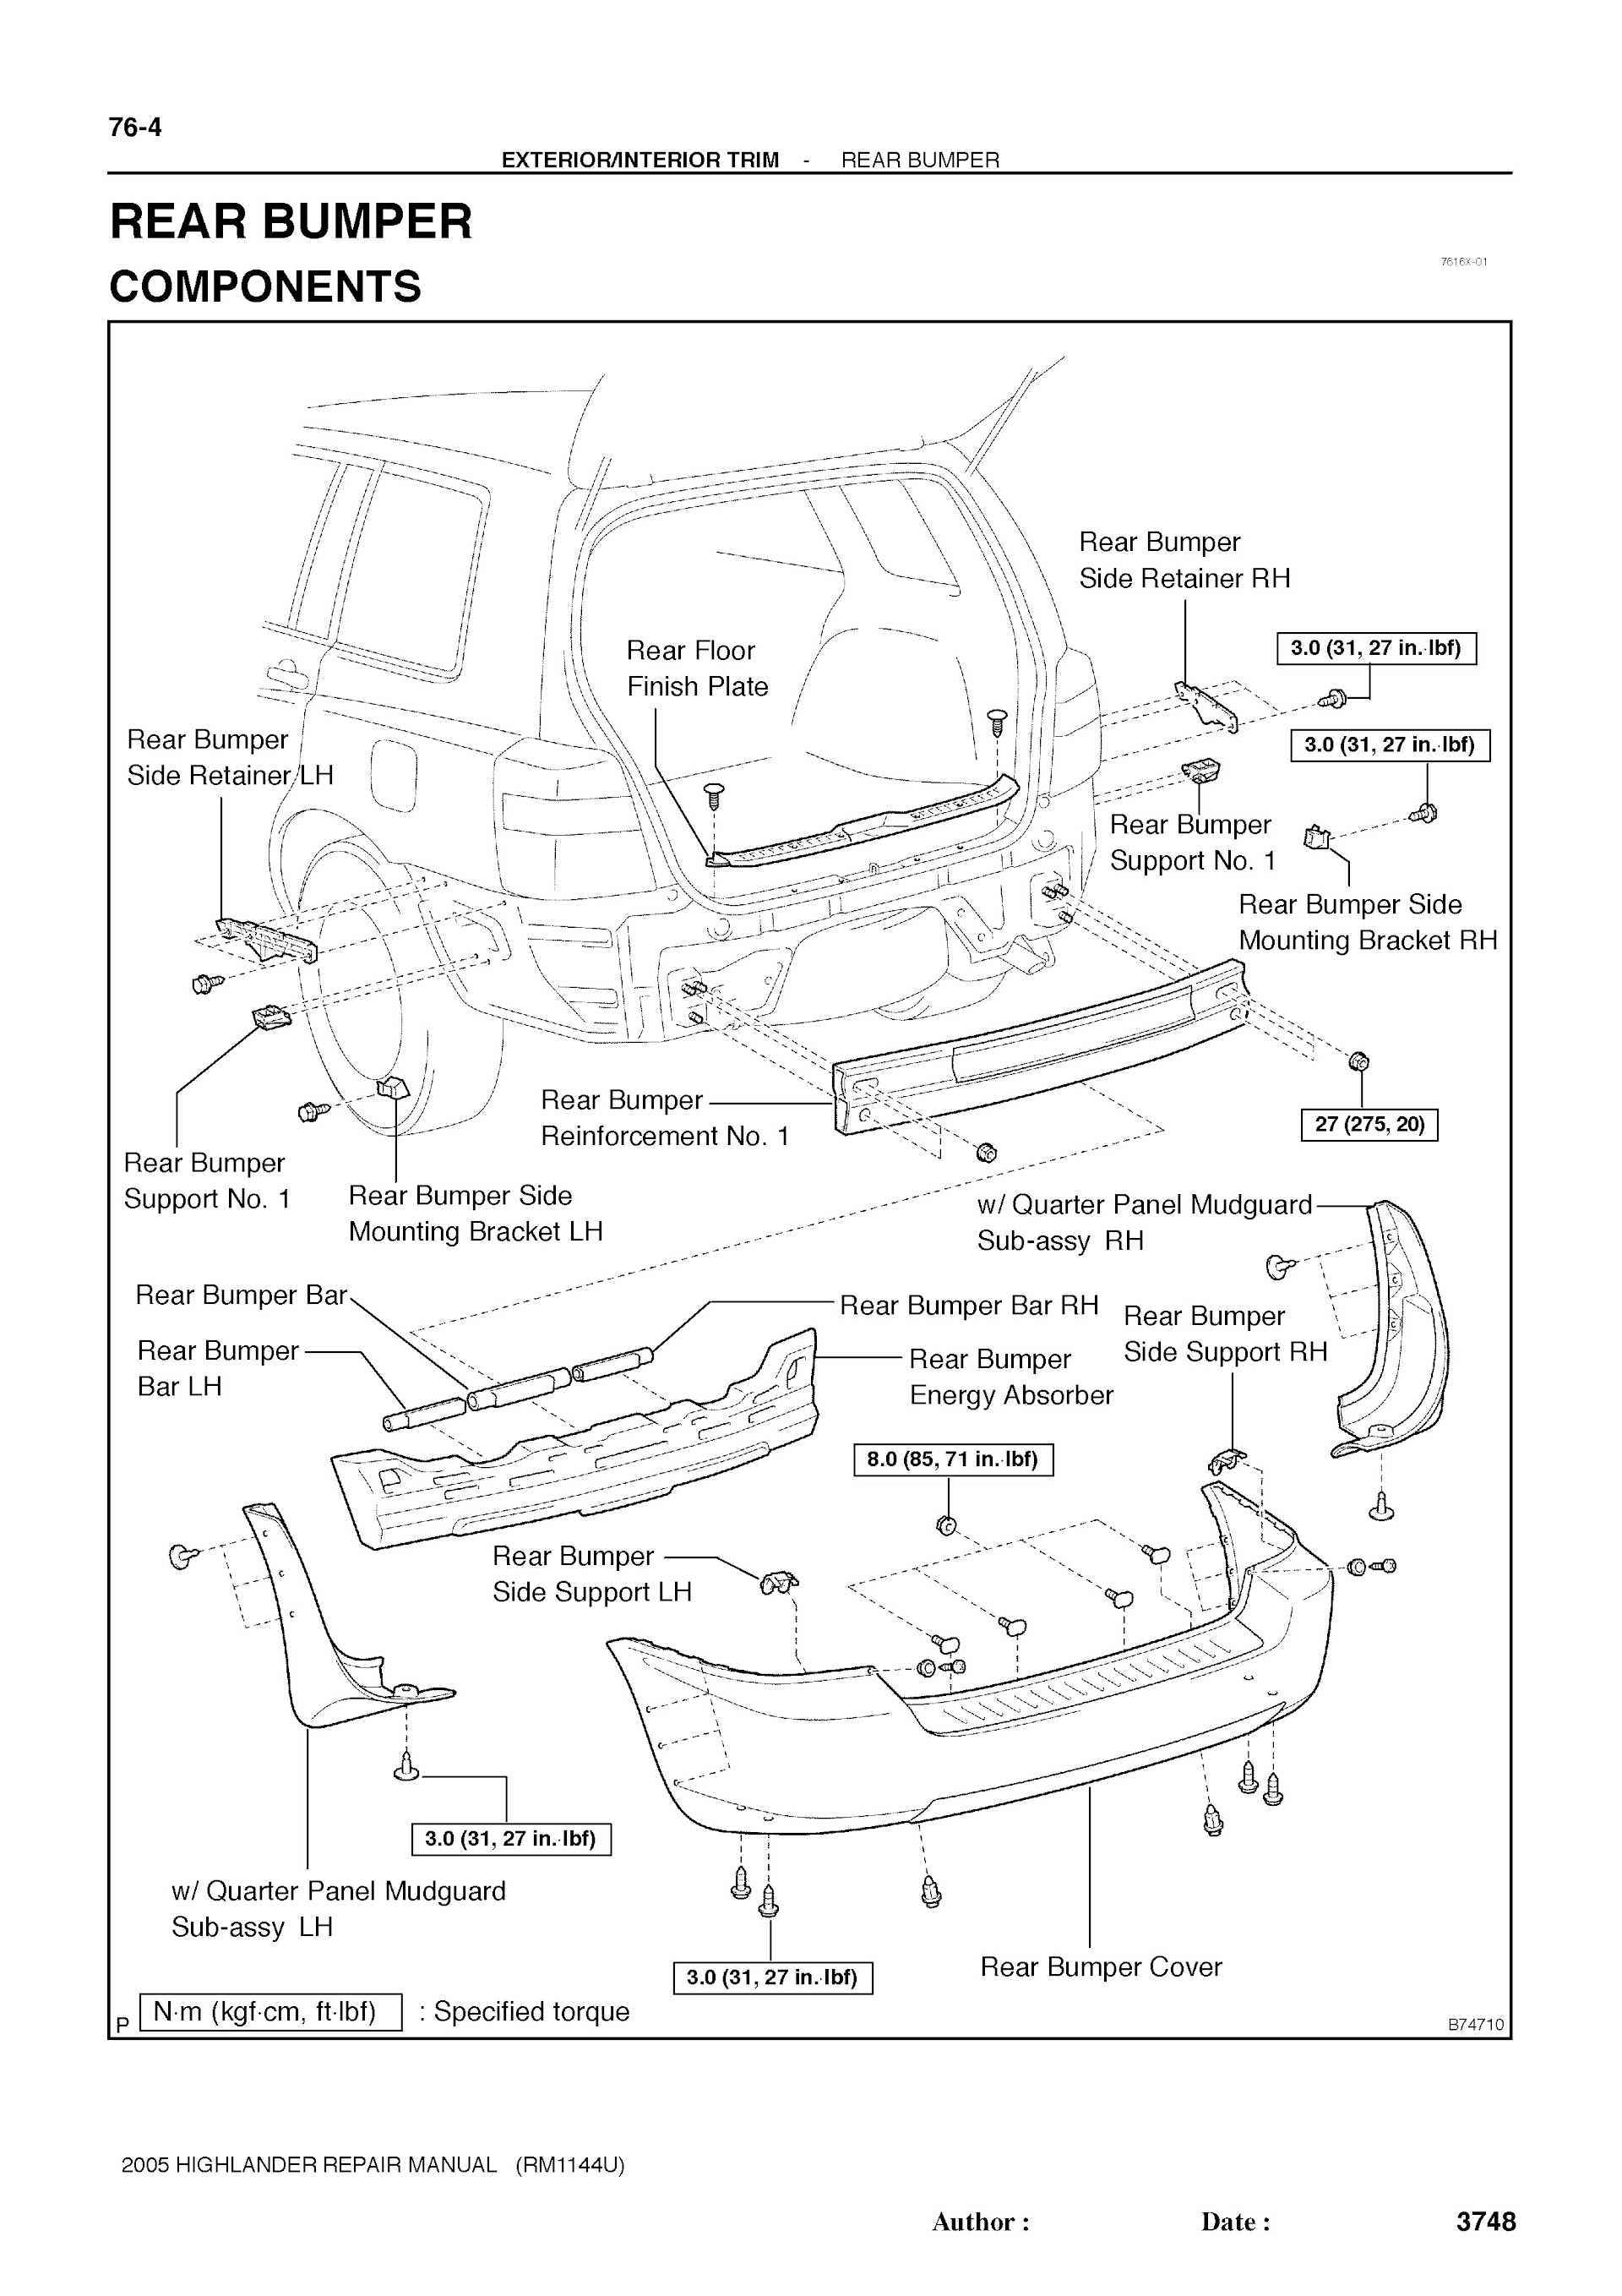 2001-2007 Toyota Highlander Repair Manual, Rear Bumper Replacement